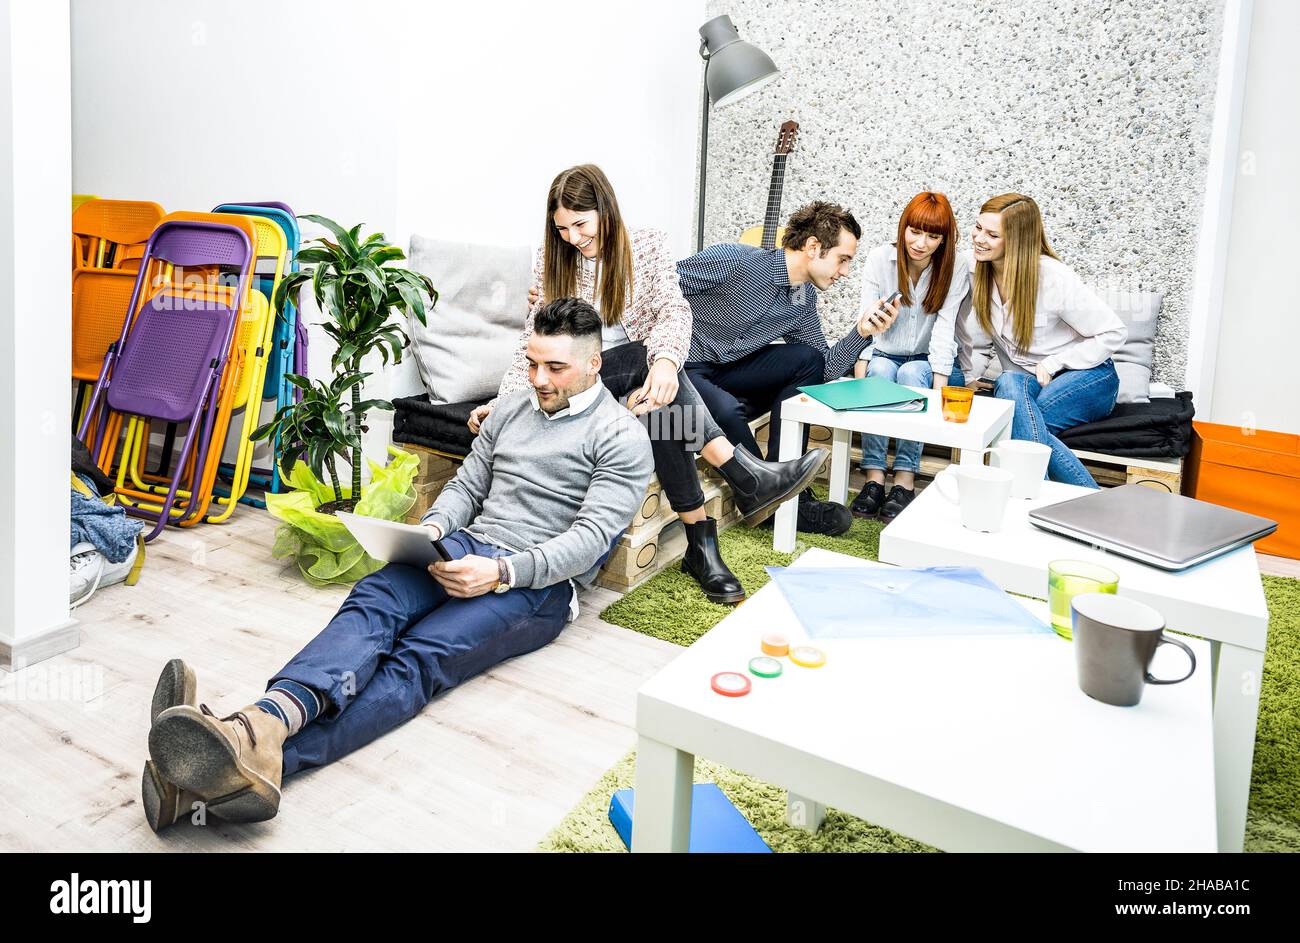 Giovani lavoratori dipendenti che si sono spezzati in ufficio start up - concetto di business risorse umane con imprenditori creativi divertirsi insieme Foto Stock